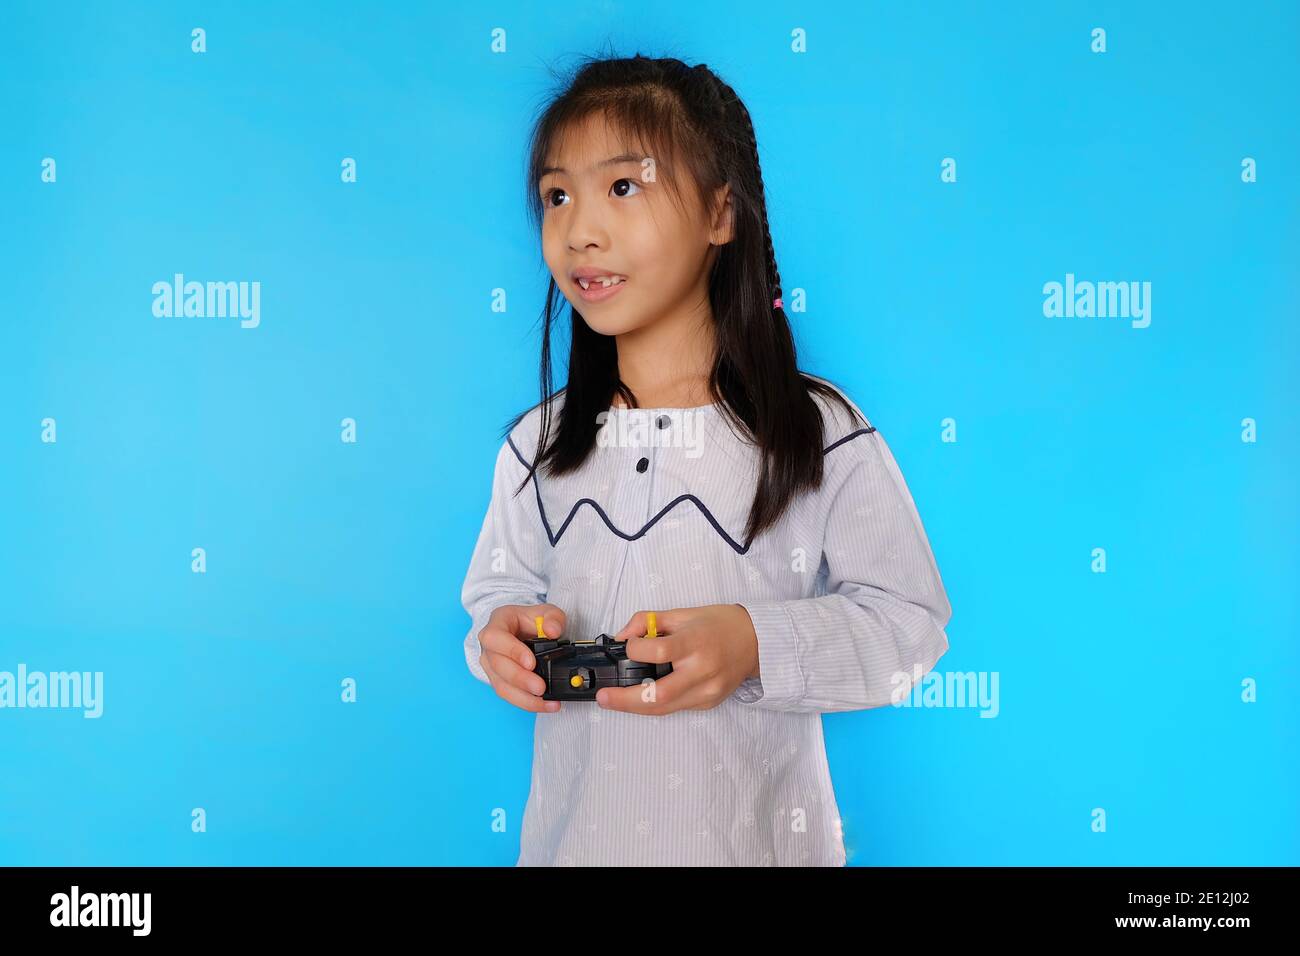 Une mignonne asiatique joue avec son drone, le contrôlant par son émetteur radio. Fond bleu clair Uni. Banque D'Images